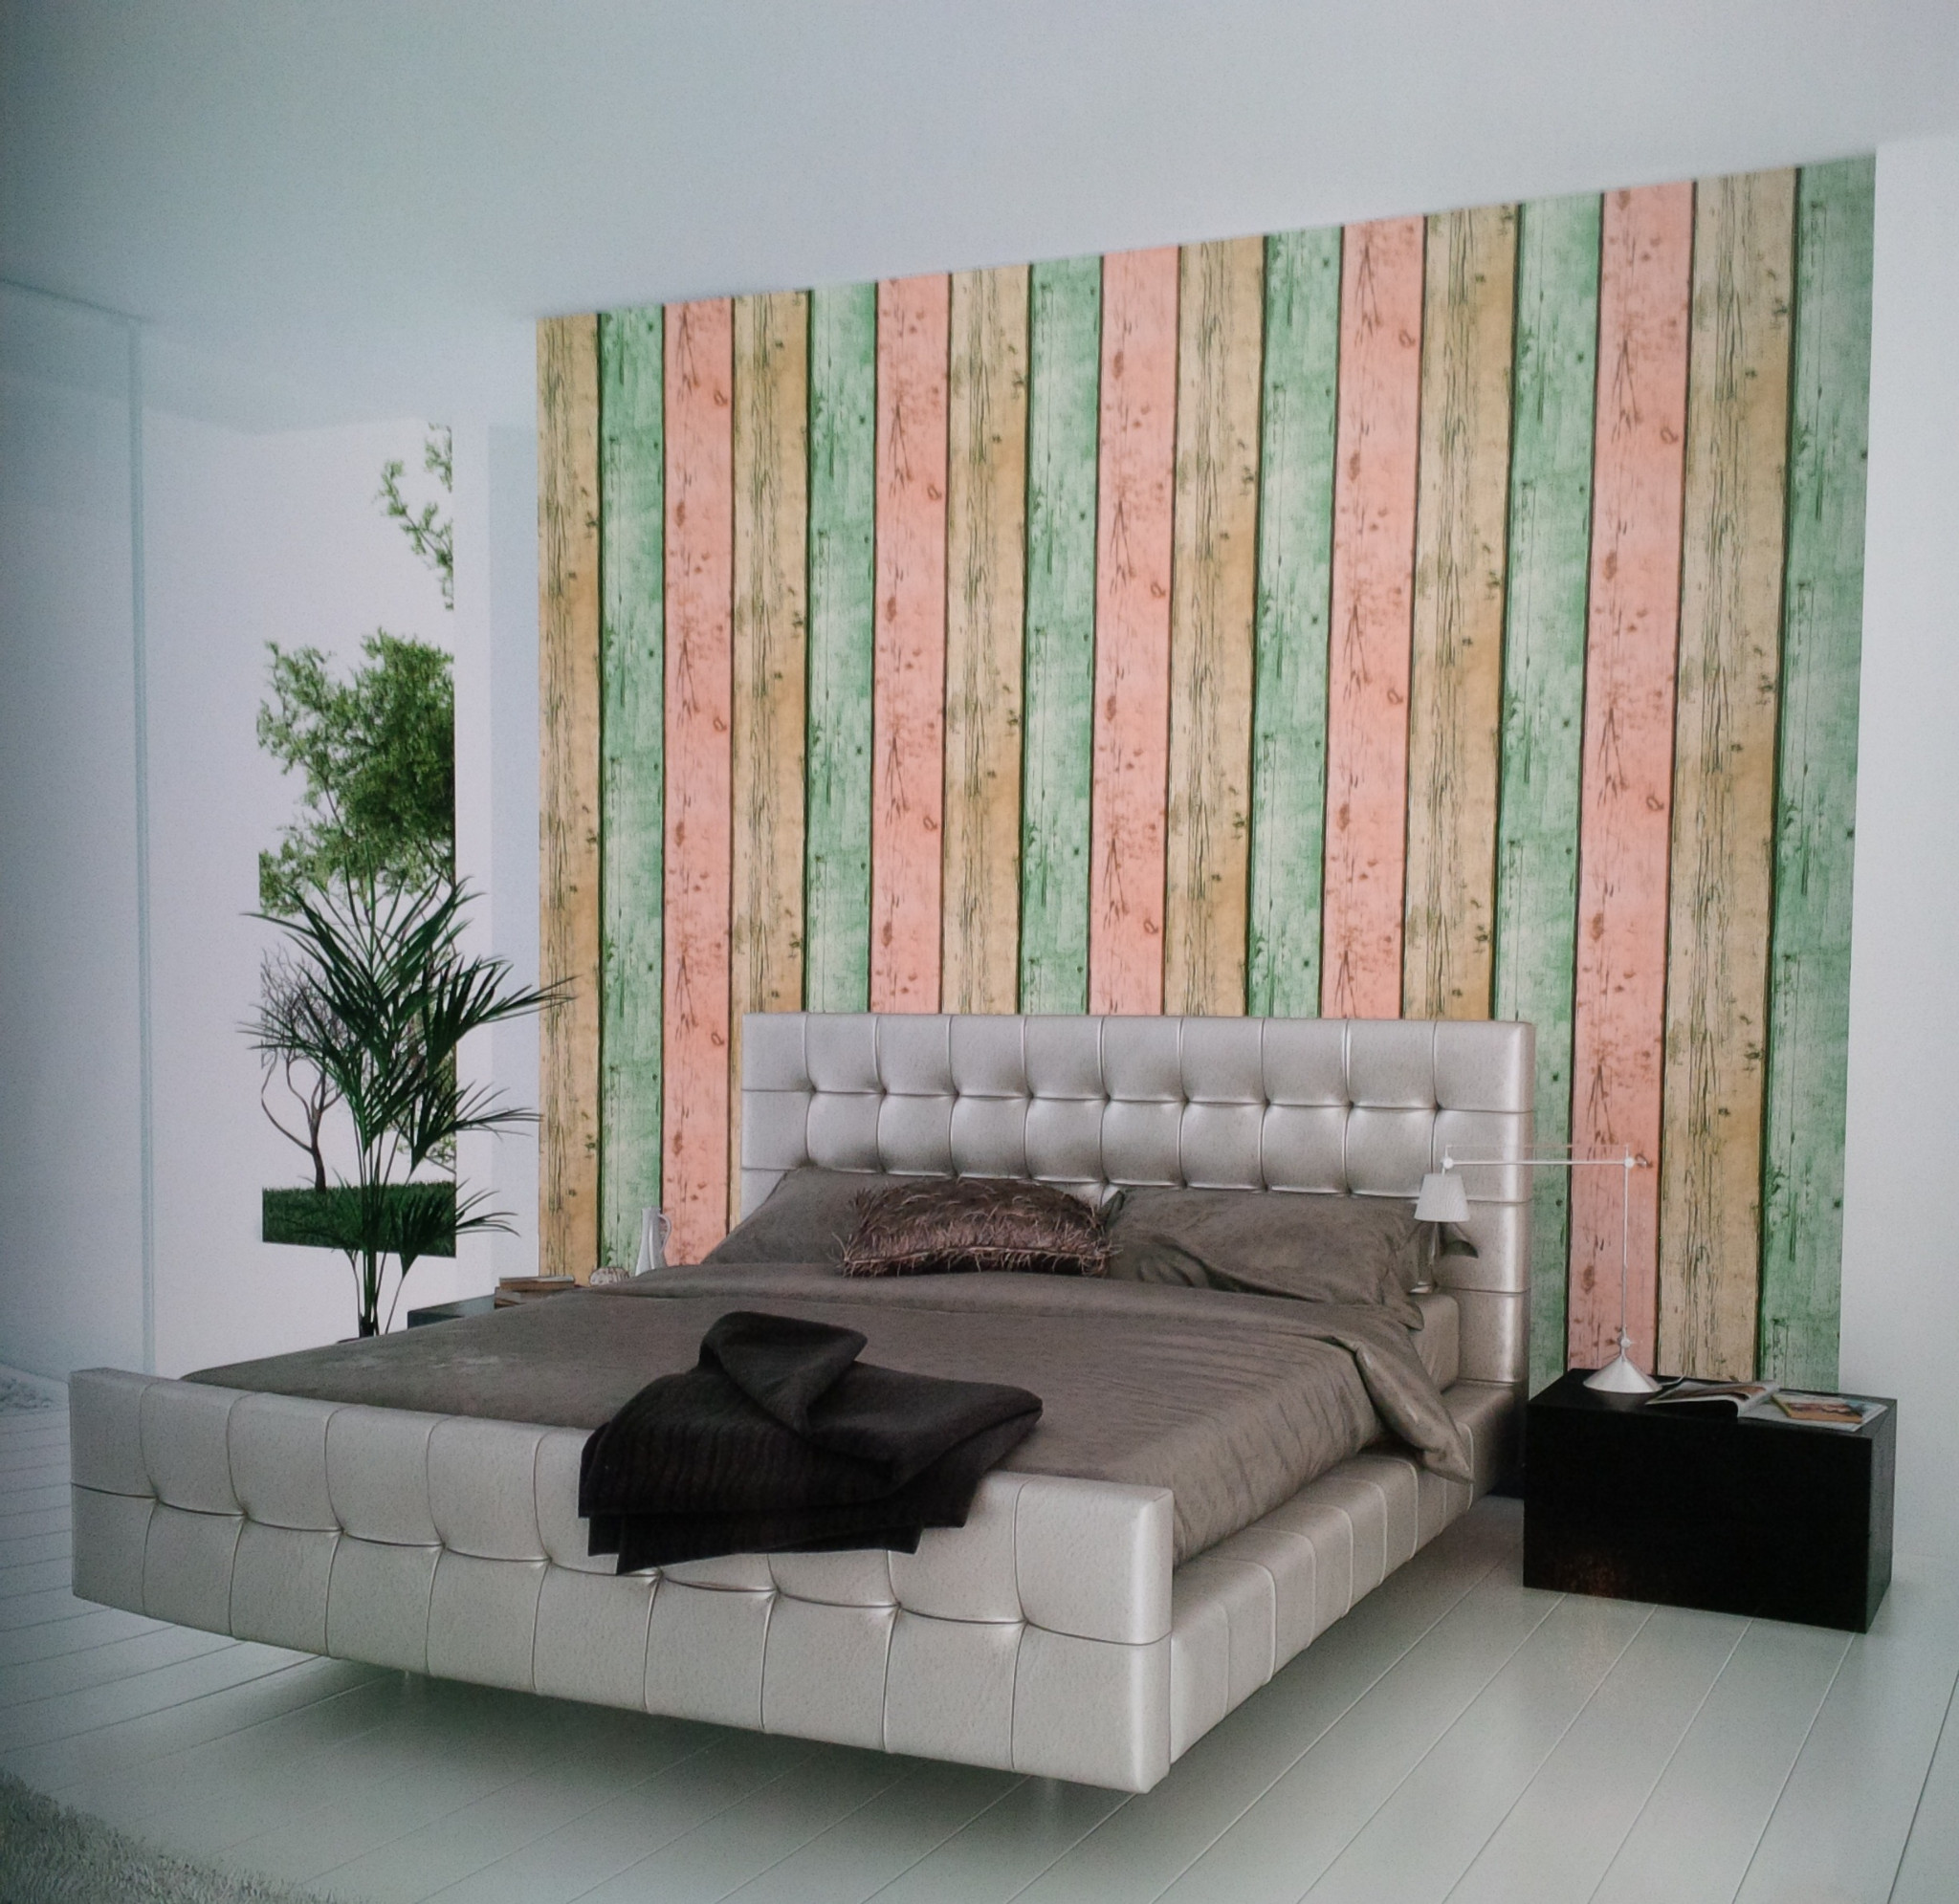 배경 dinding 주제 kayu,가구,방,벽,인테리어 디자인,침대